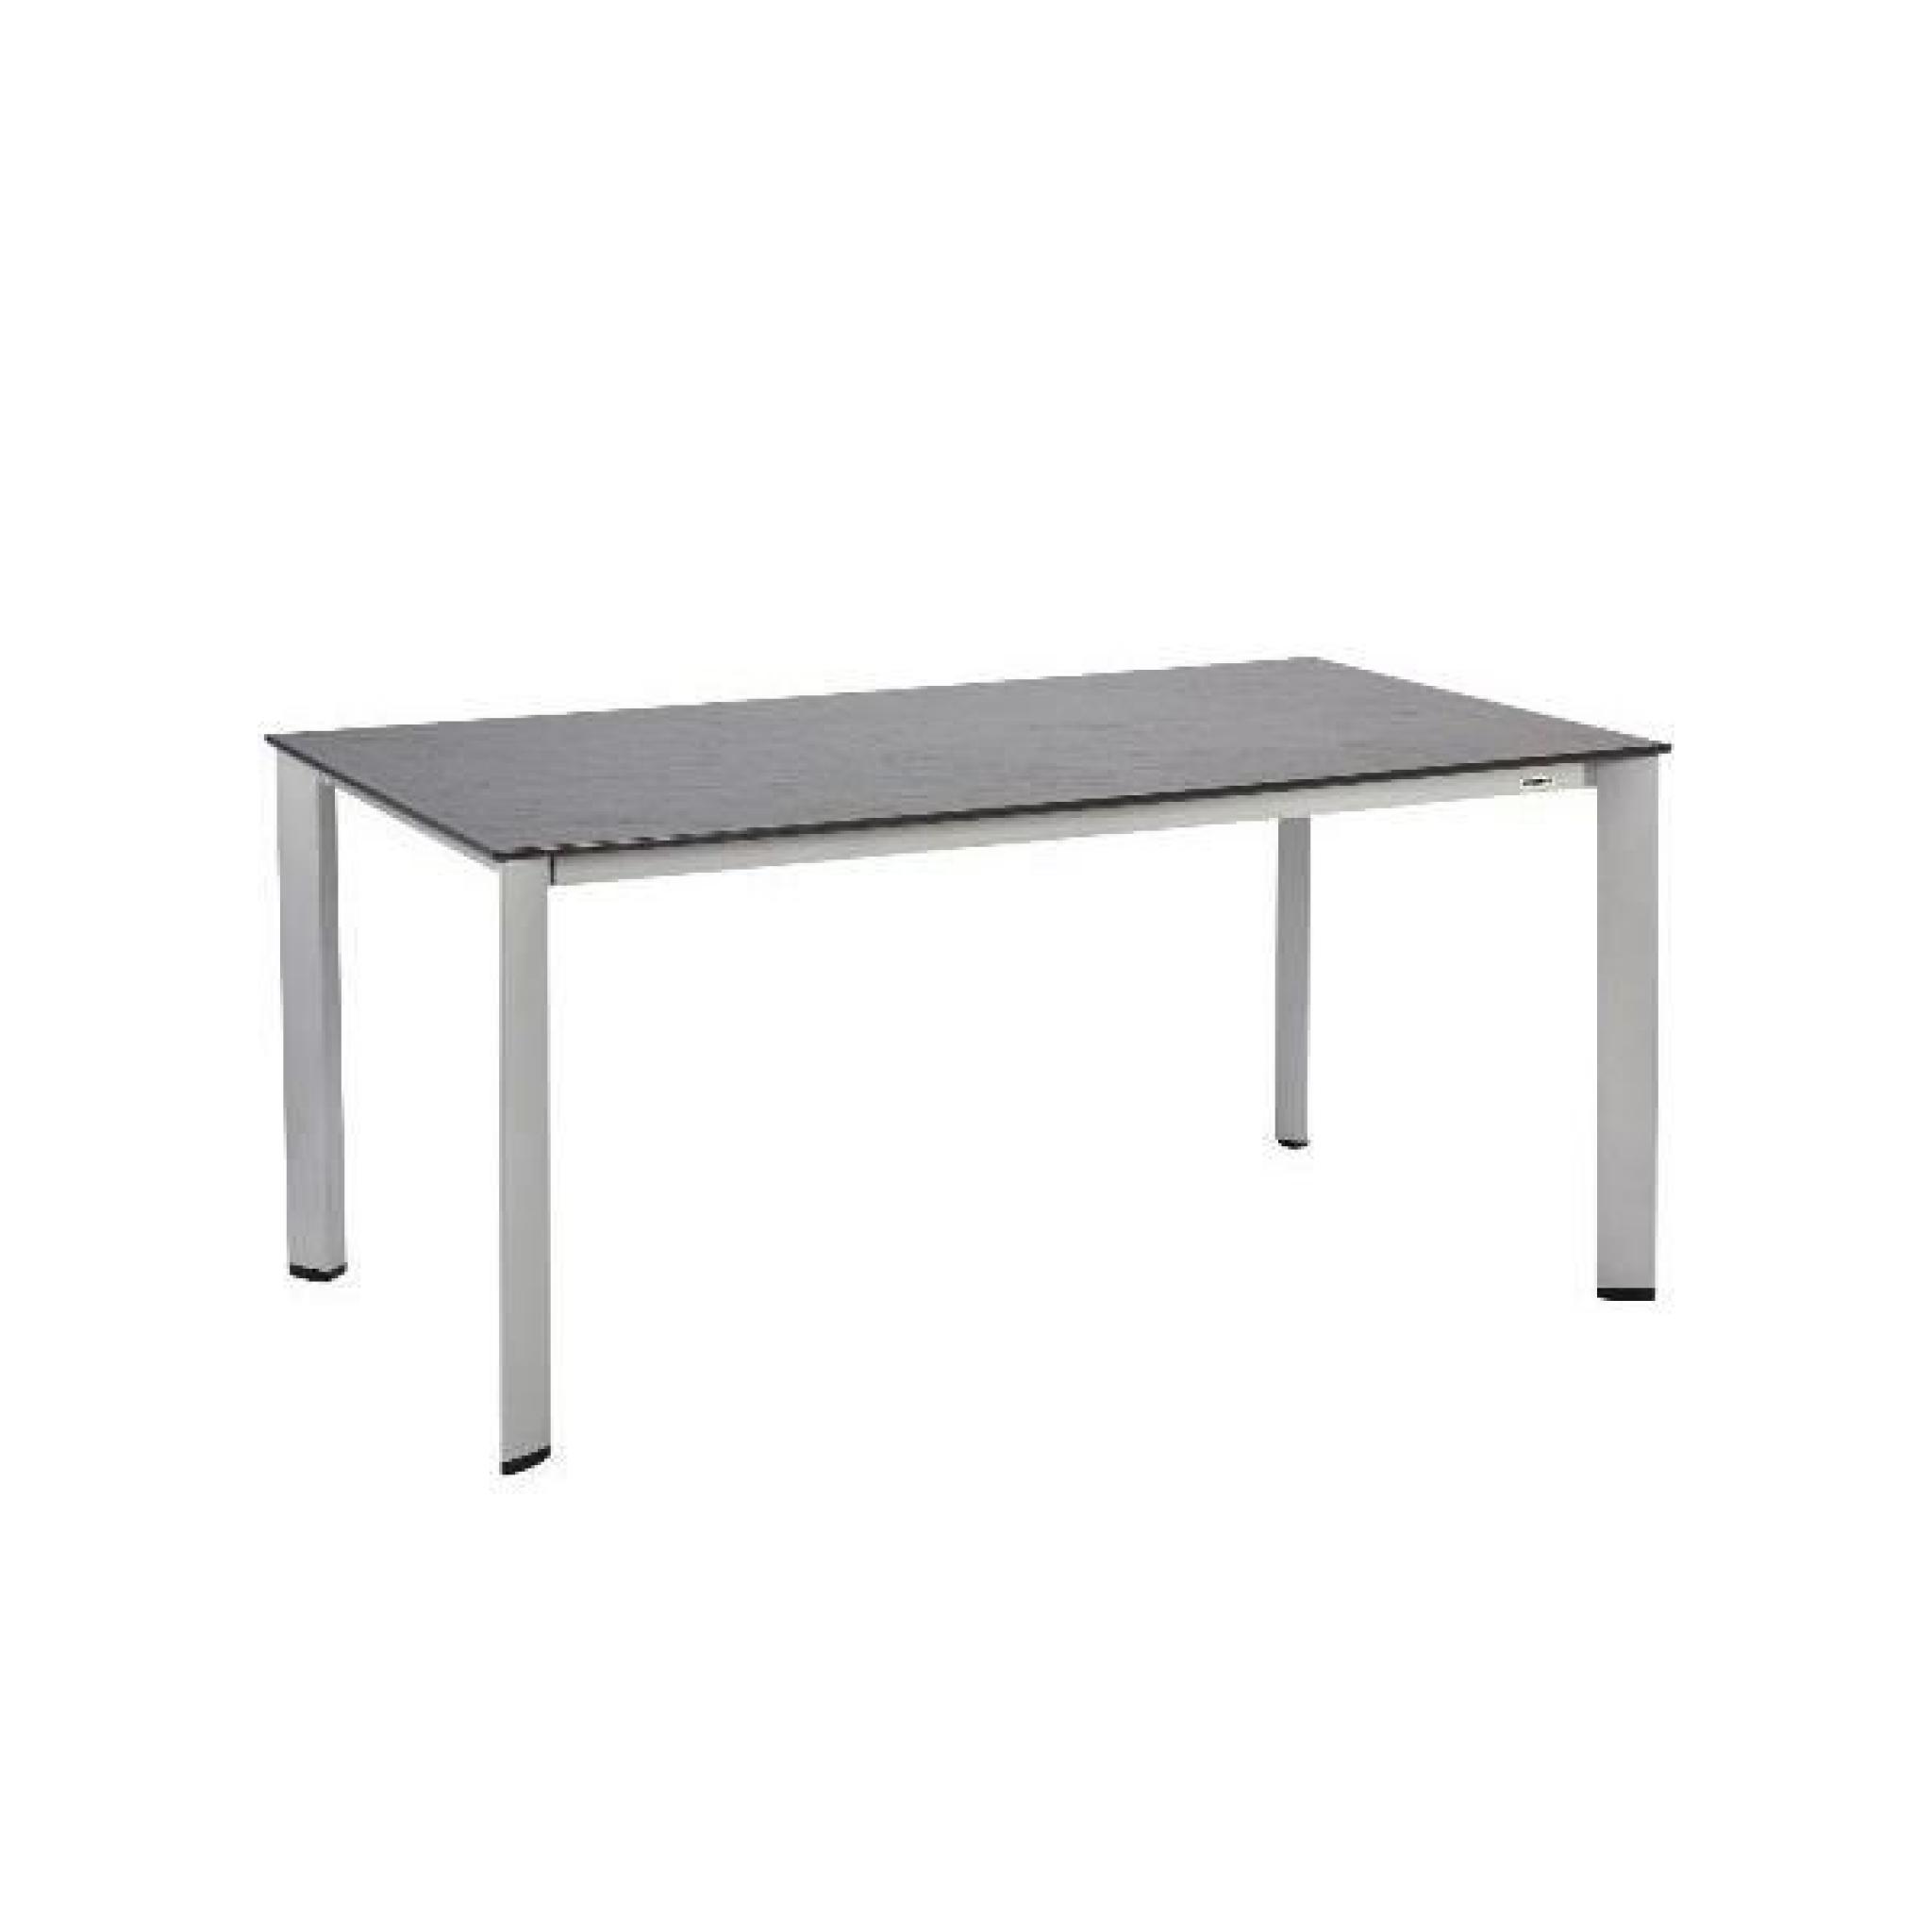 Table de jardin LOFT anthracite en aluminium et résine - l 220 x L 95 x H 74 cm pas cher